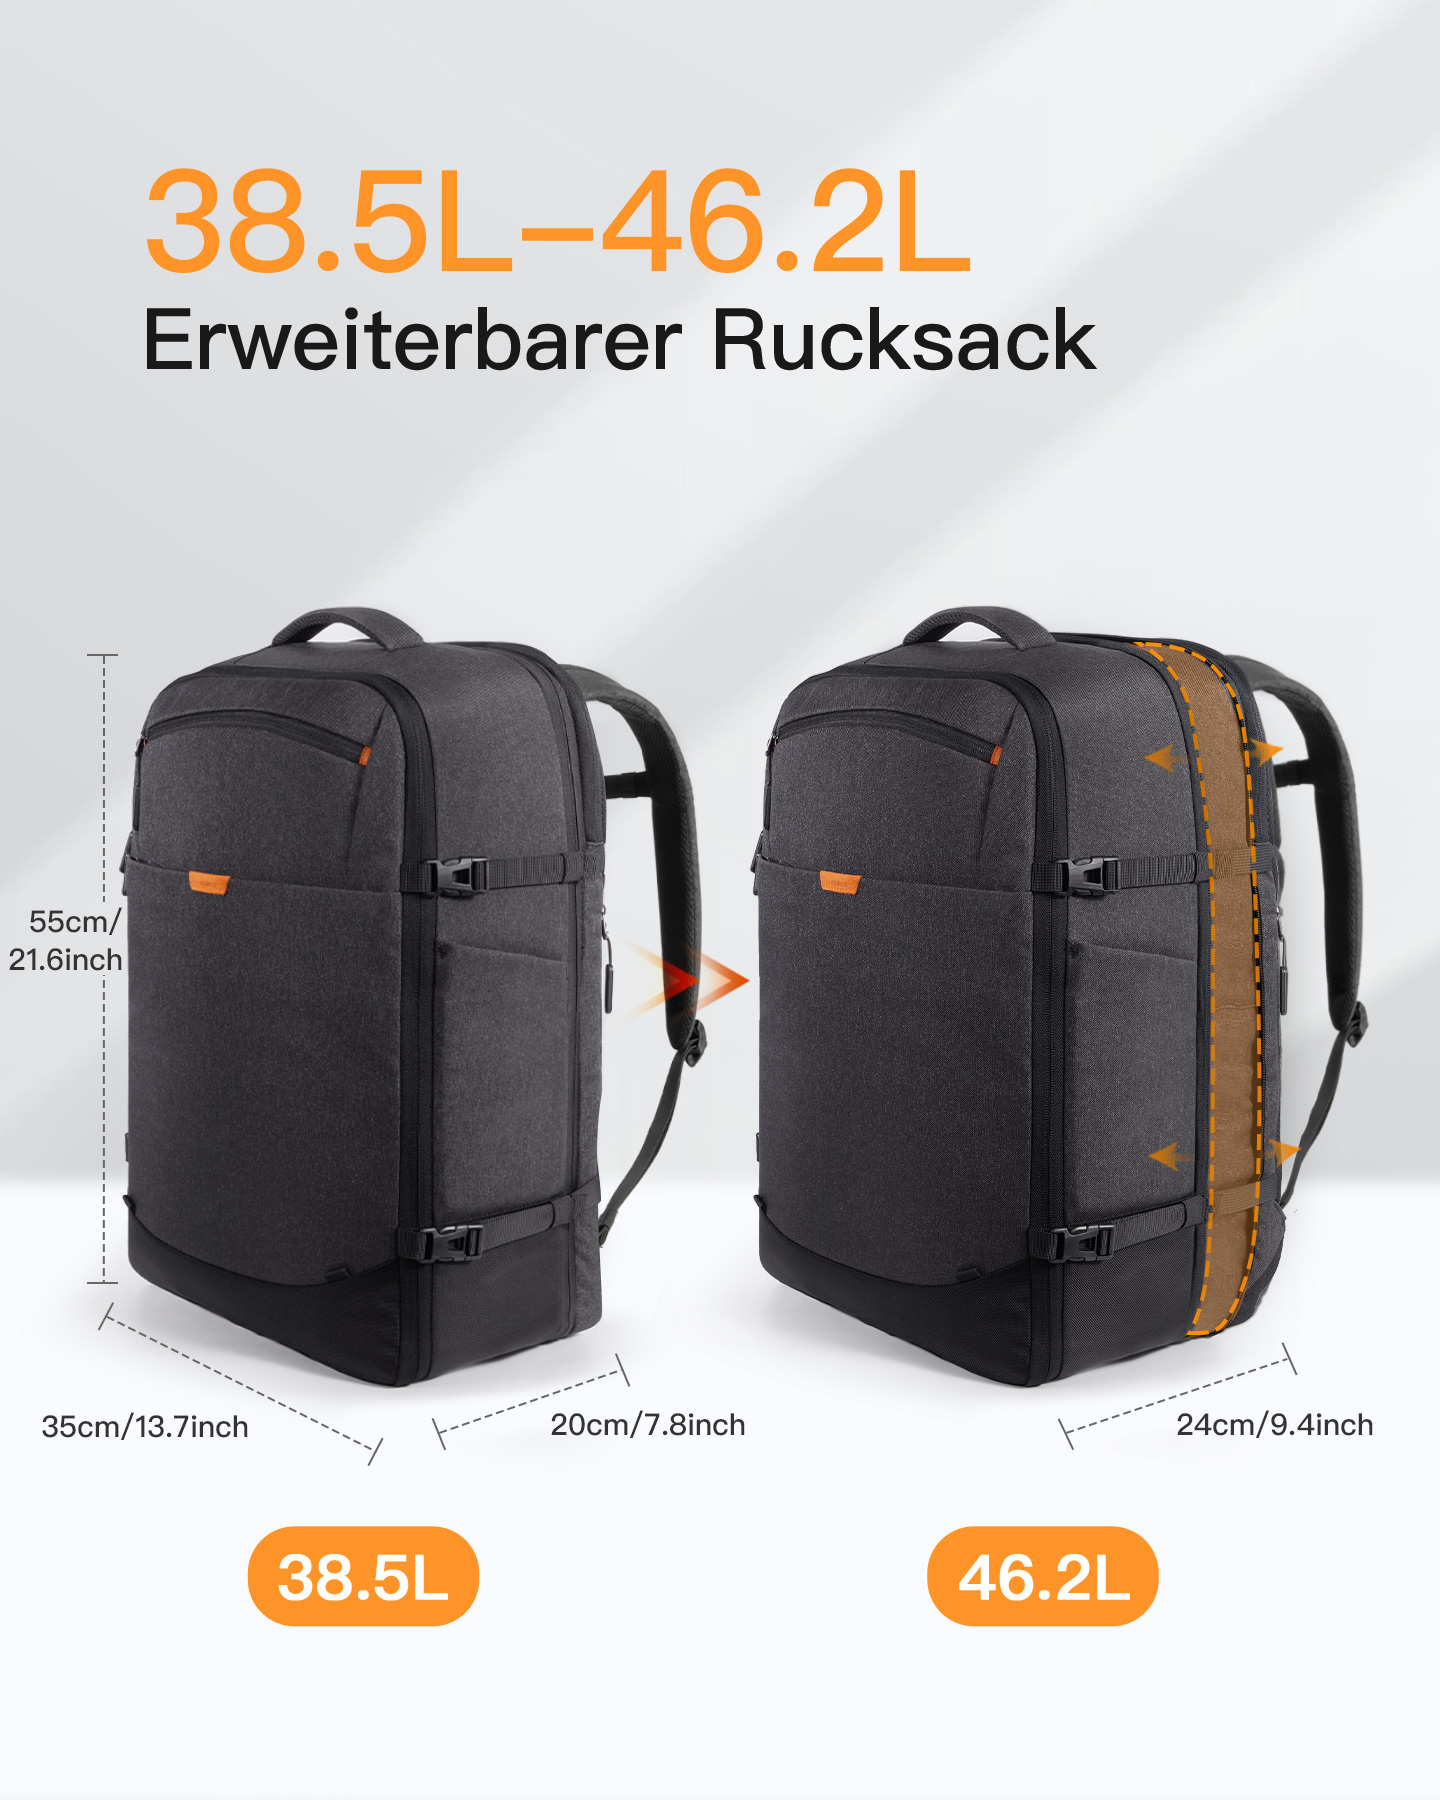 Handgepäck spritzwassergeschütztes Unisex L Rucksack, INATECK erweiterbarer Schwarz, Rucksack Laptop 38.5-46.2